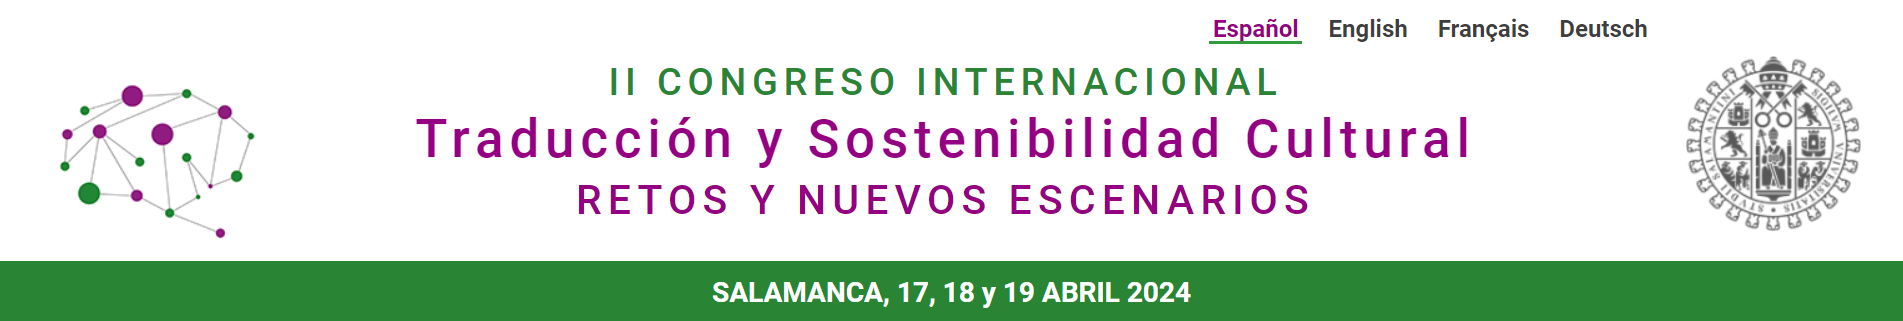 2º Congreso Internacional Traducción y sostenibilidad cultural: retos y nuevos escenarios